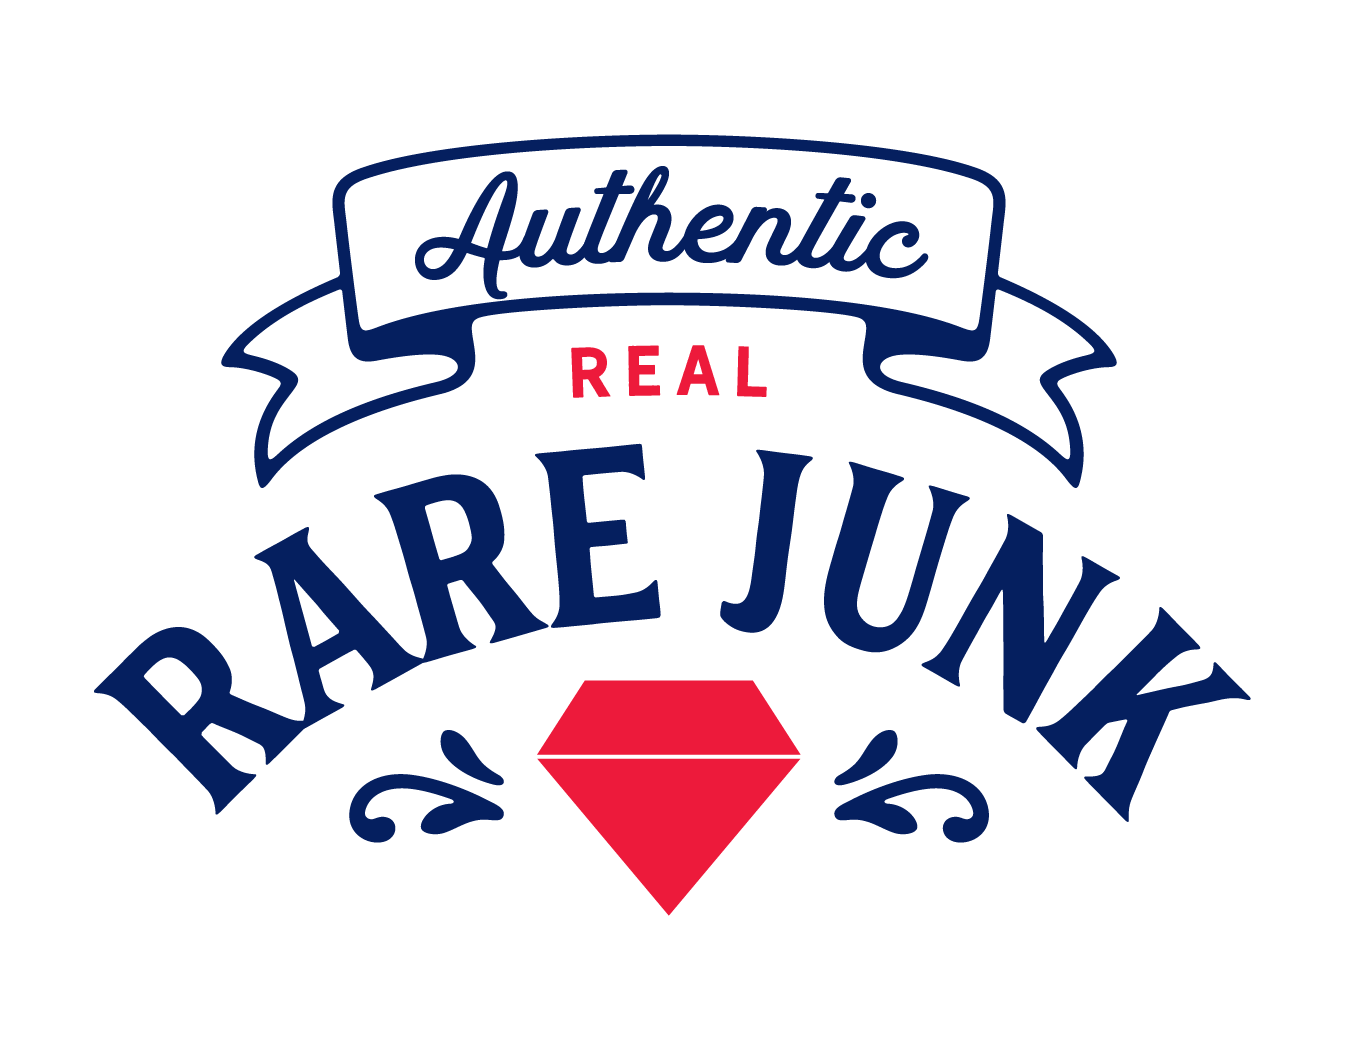 Real Rare Junk